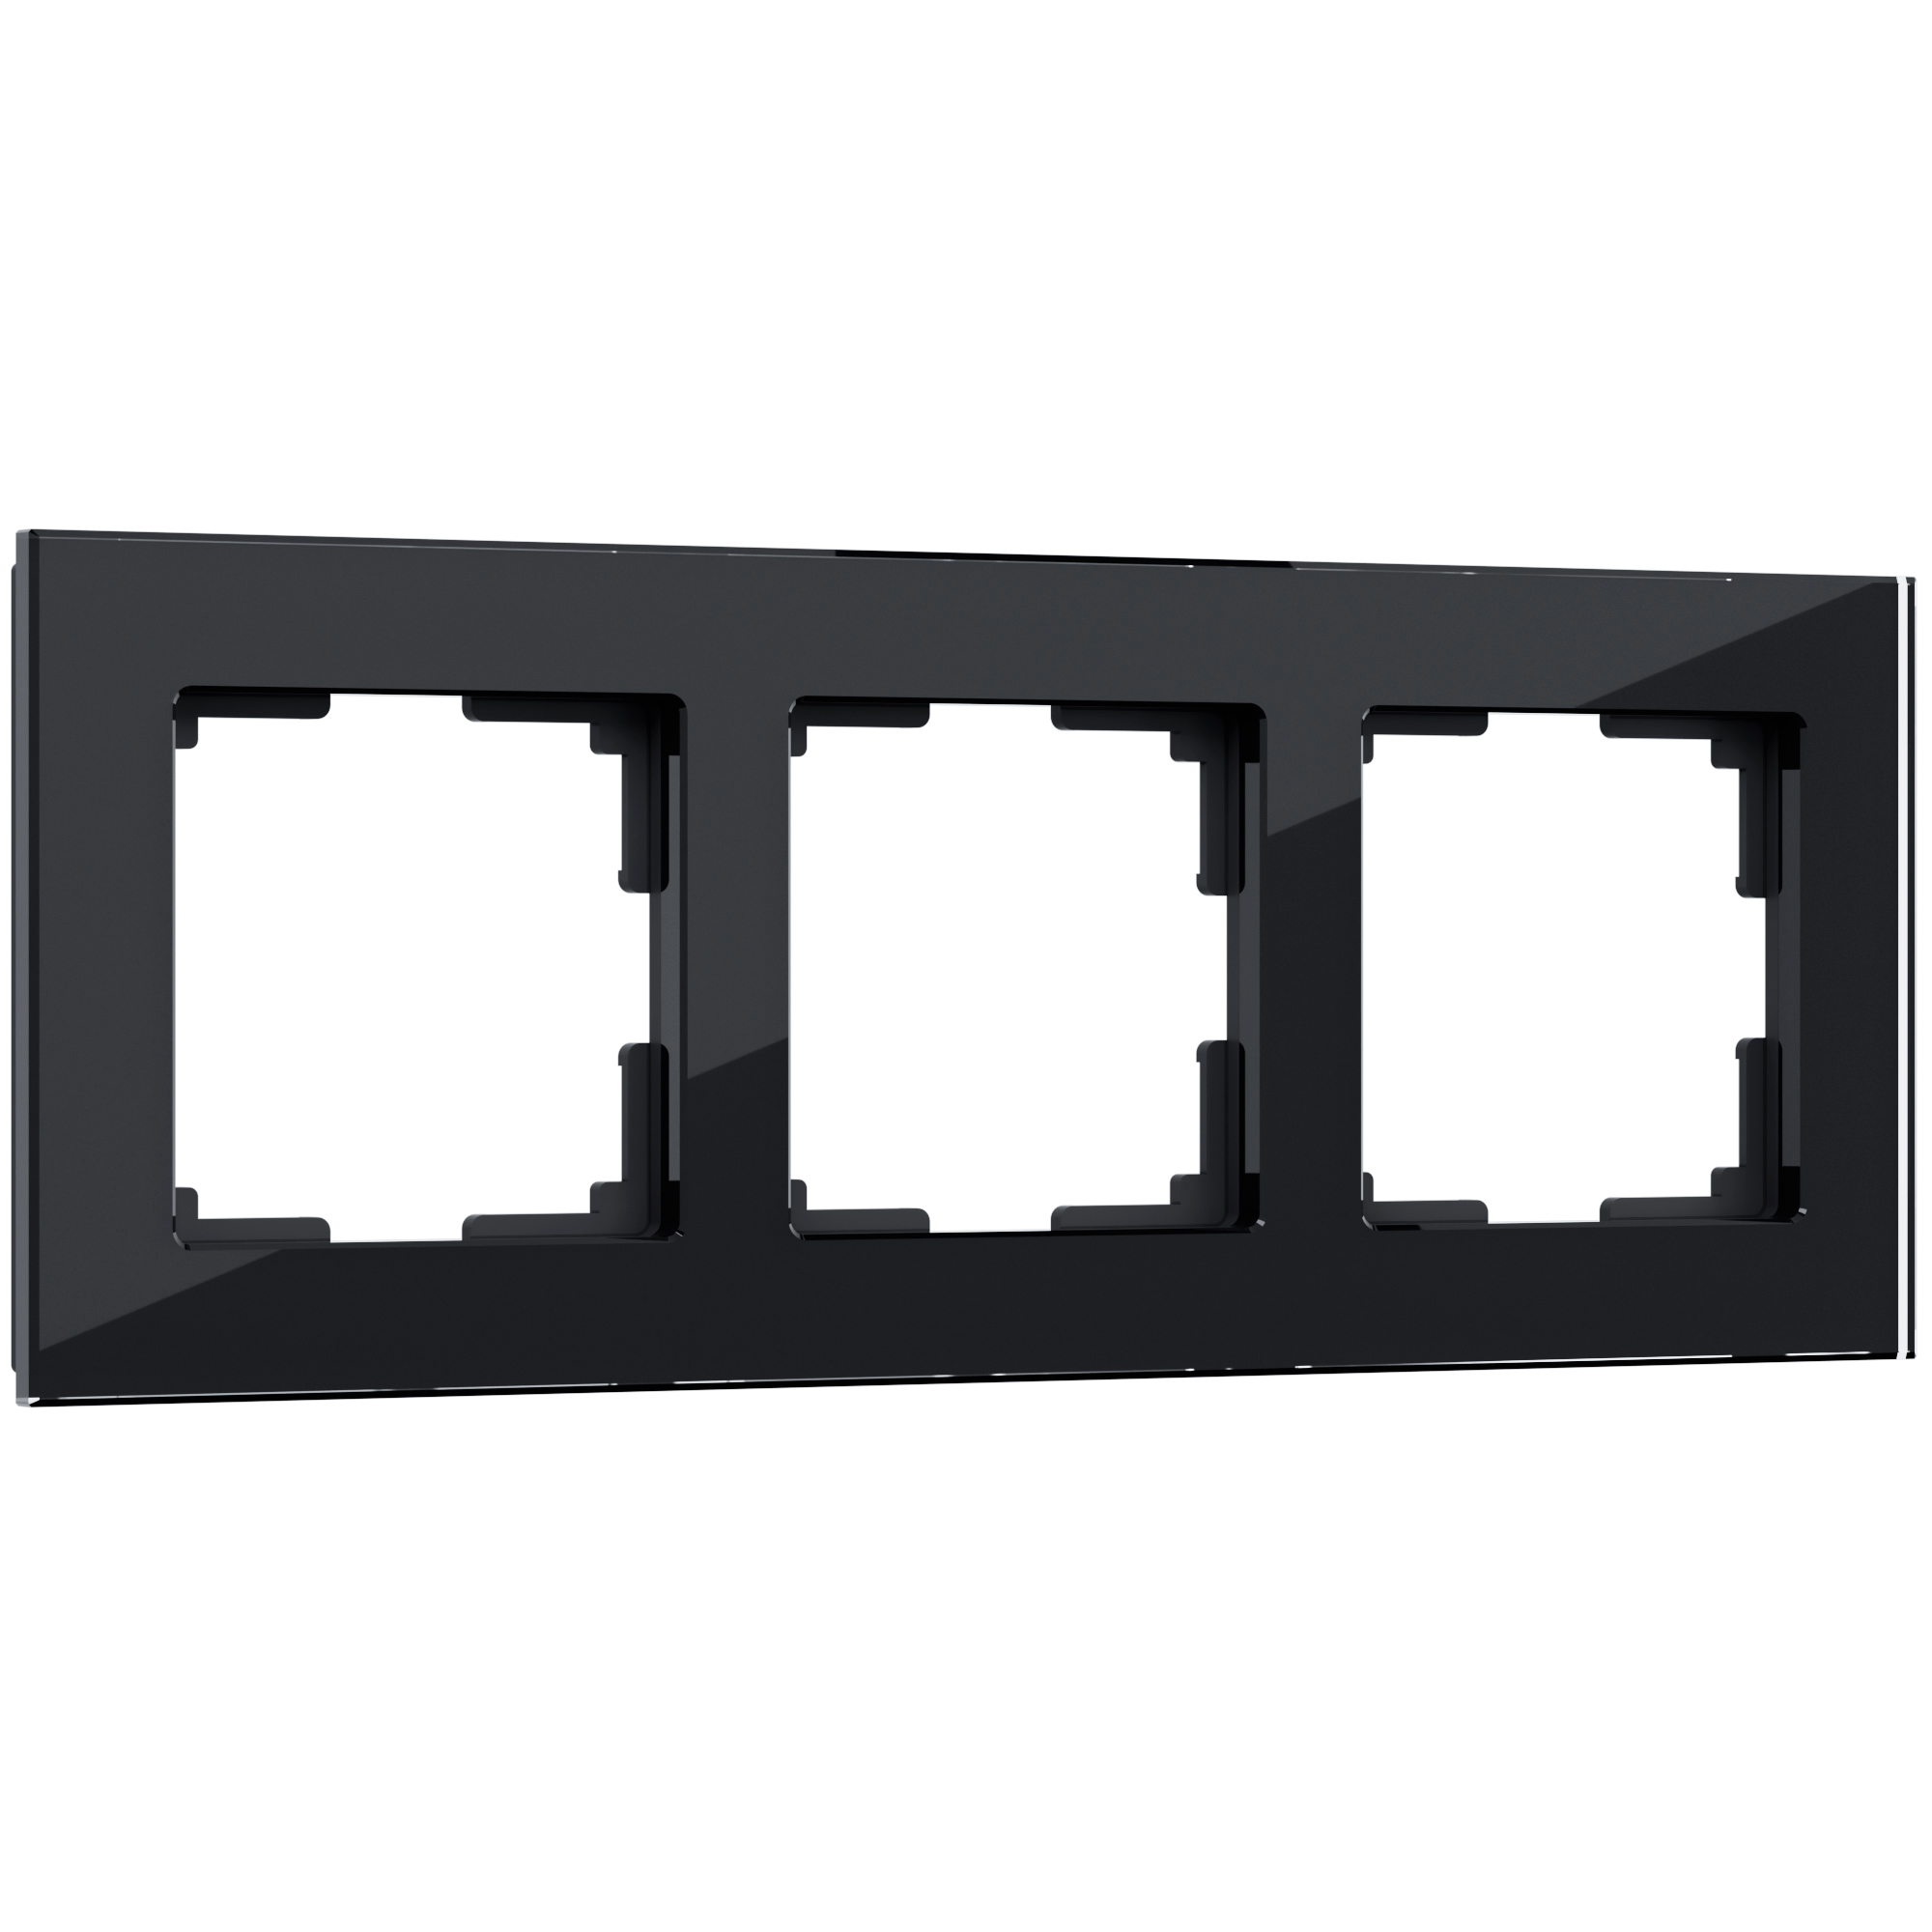 Рамка для розетки / выключателяна 3 поста Werkel  W0031108 Favorit черный стекло рамка на 2 поста werkel favorit runda w0025108 4690389166457